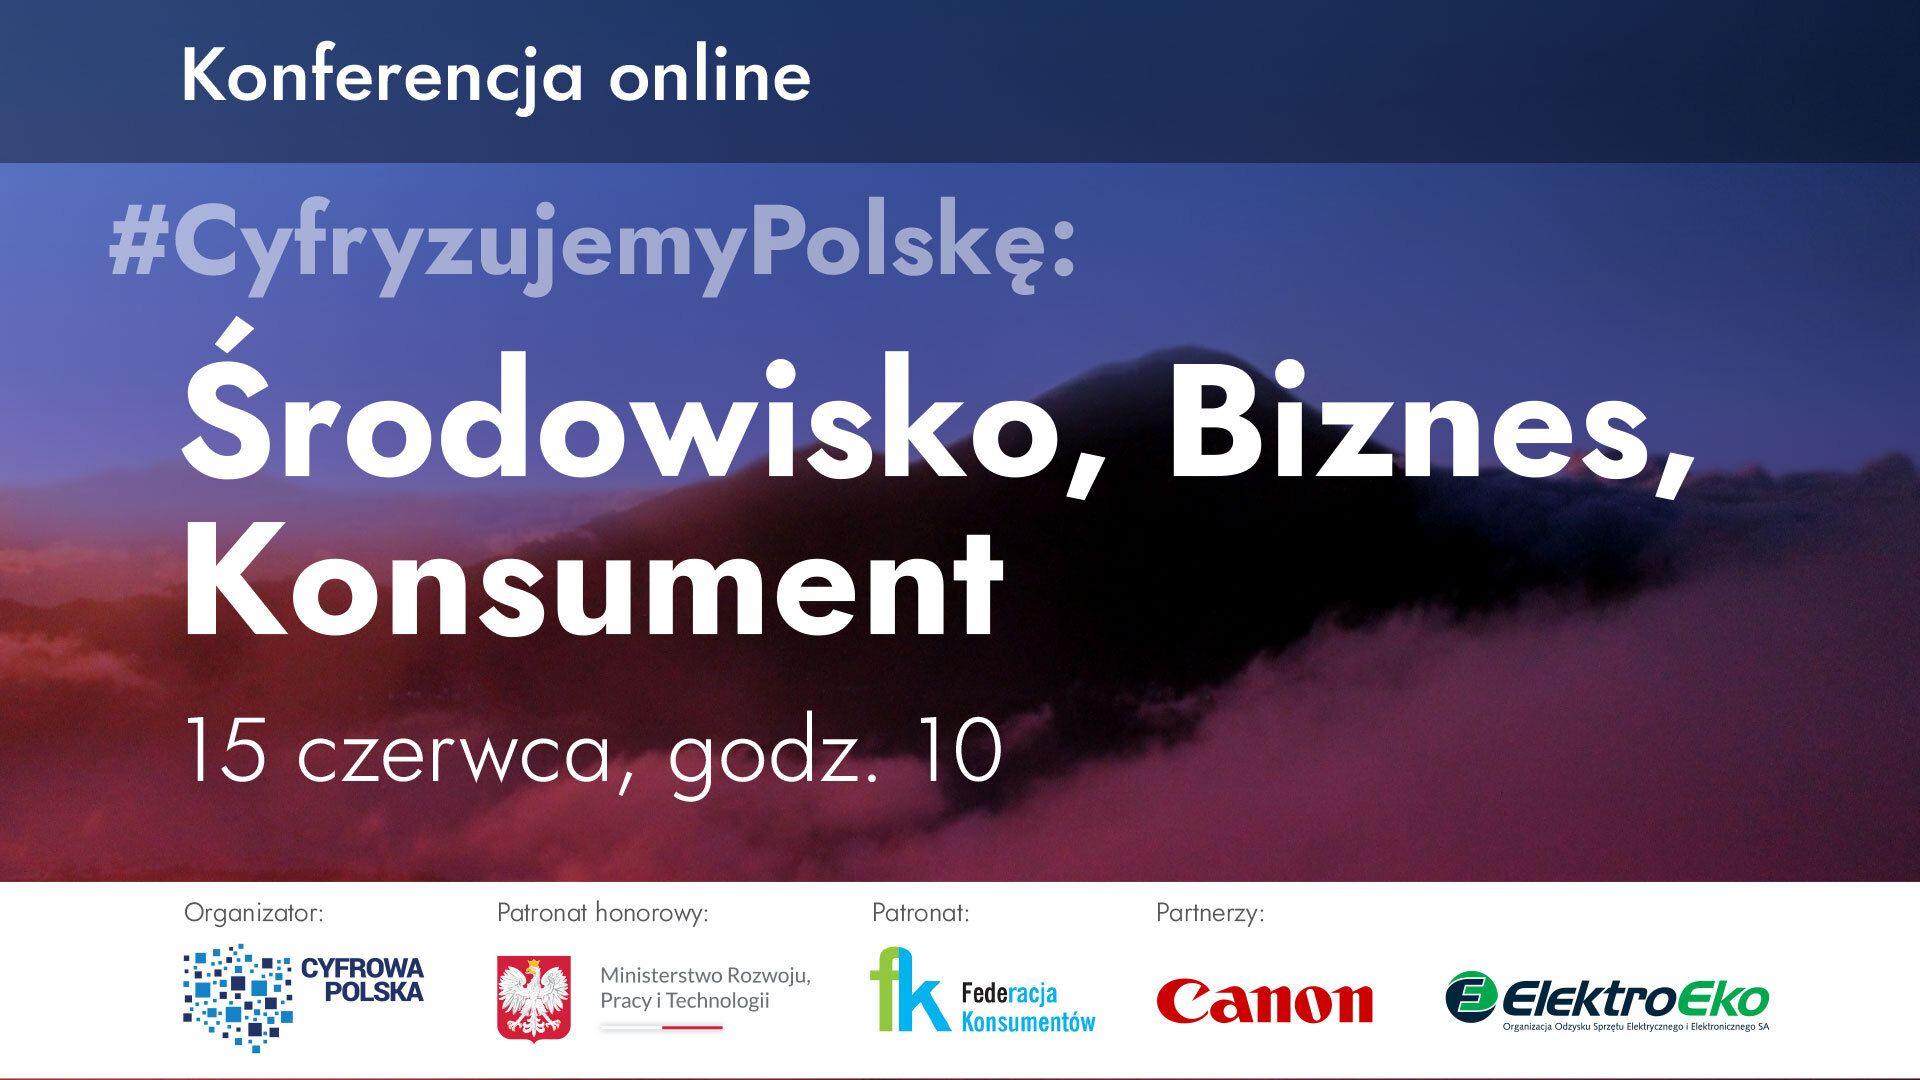 Konferencja "Cyfryzujemy Polskę", fot. "Cyfryzujemy Polskę".